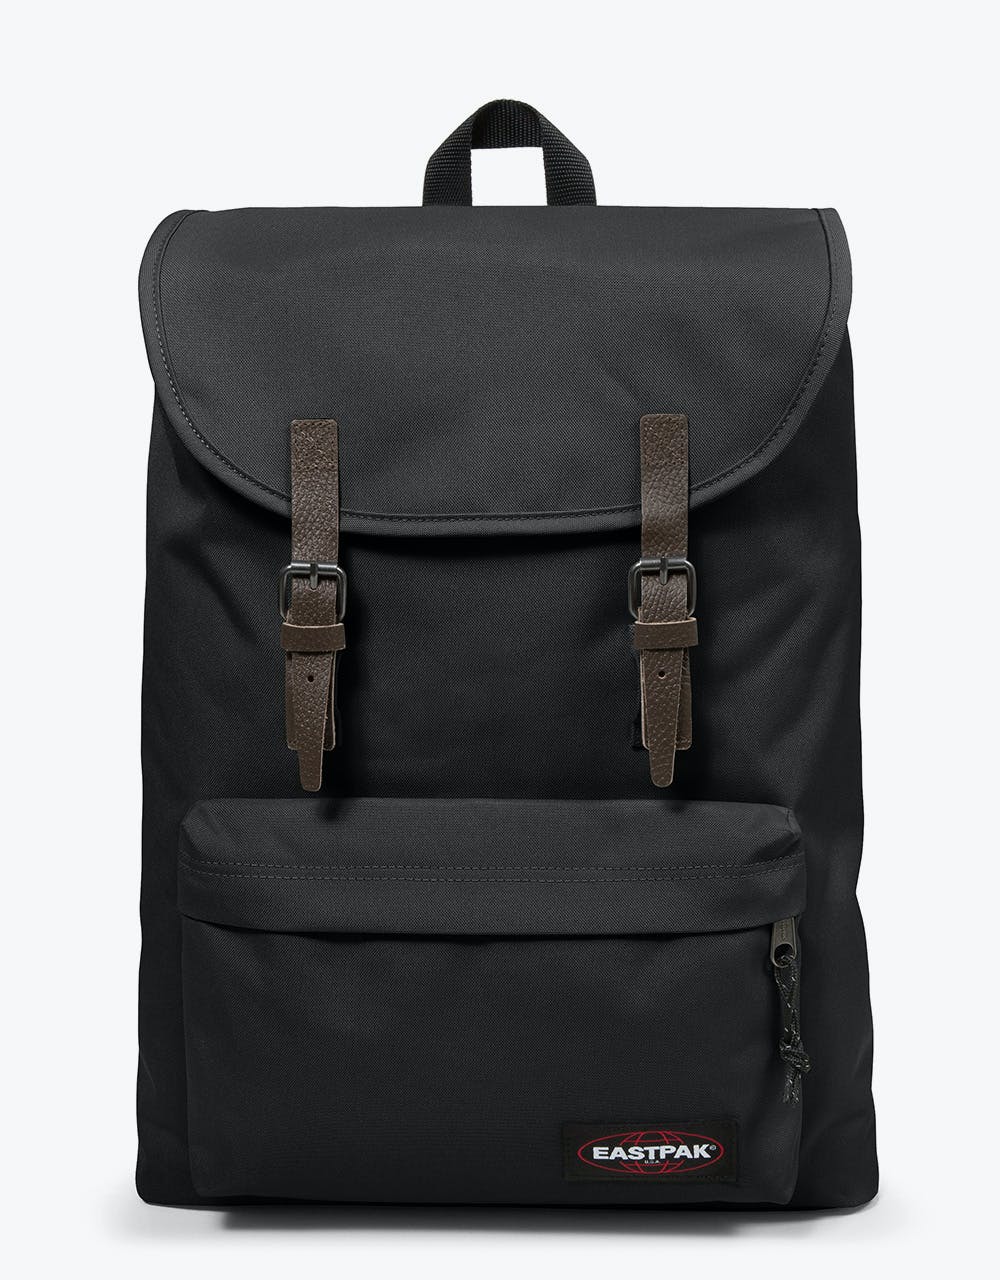 Eastpak London Backpack - Black